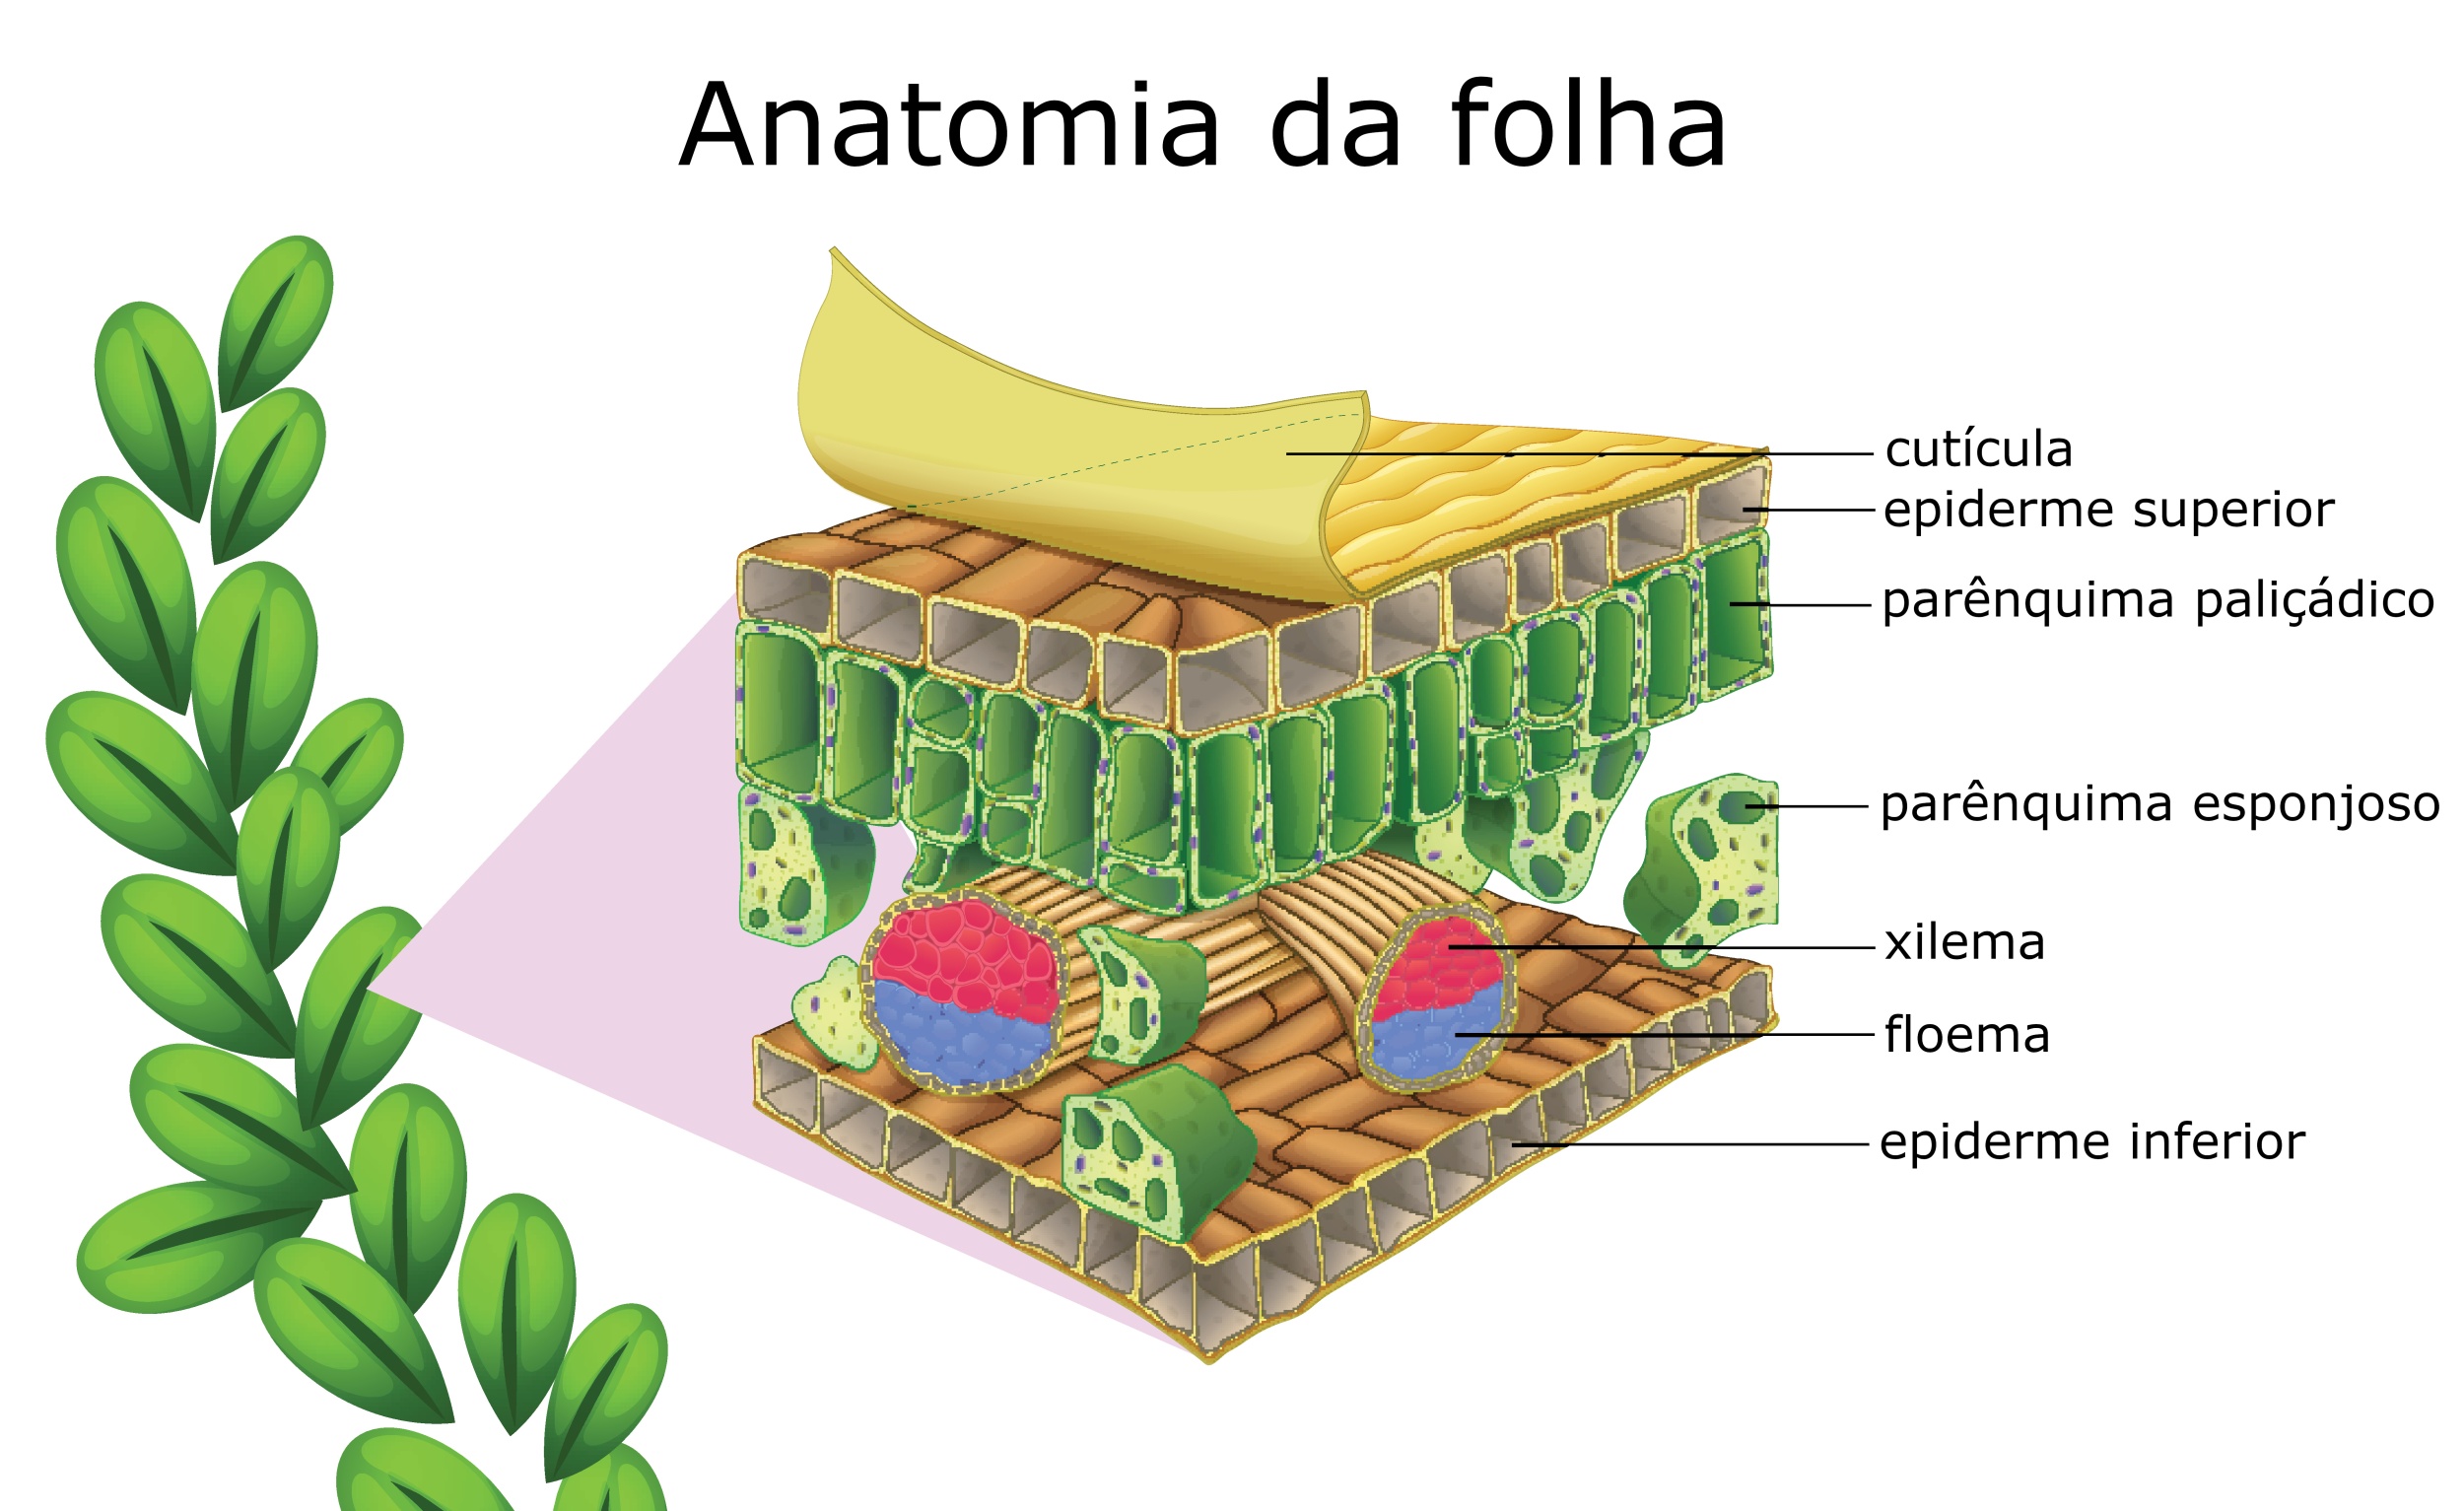 Anatomia da folha